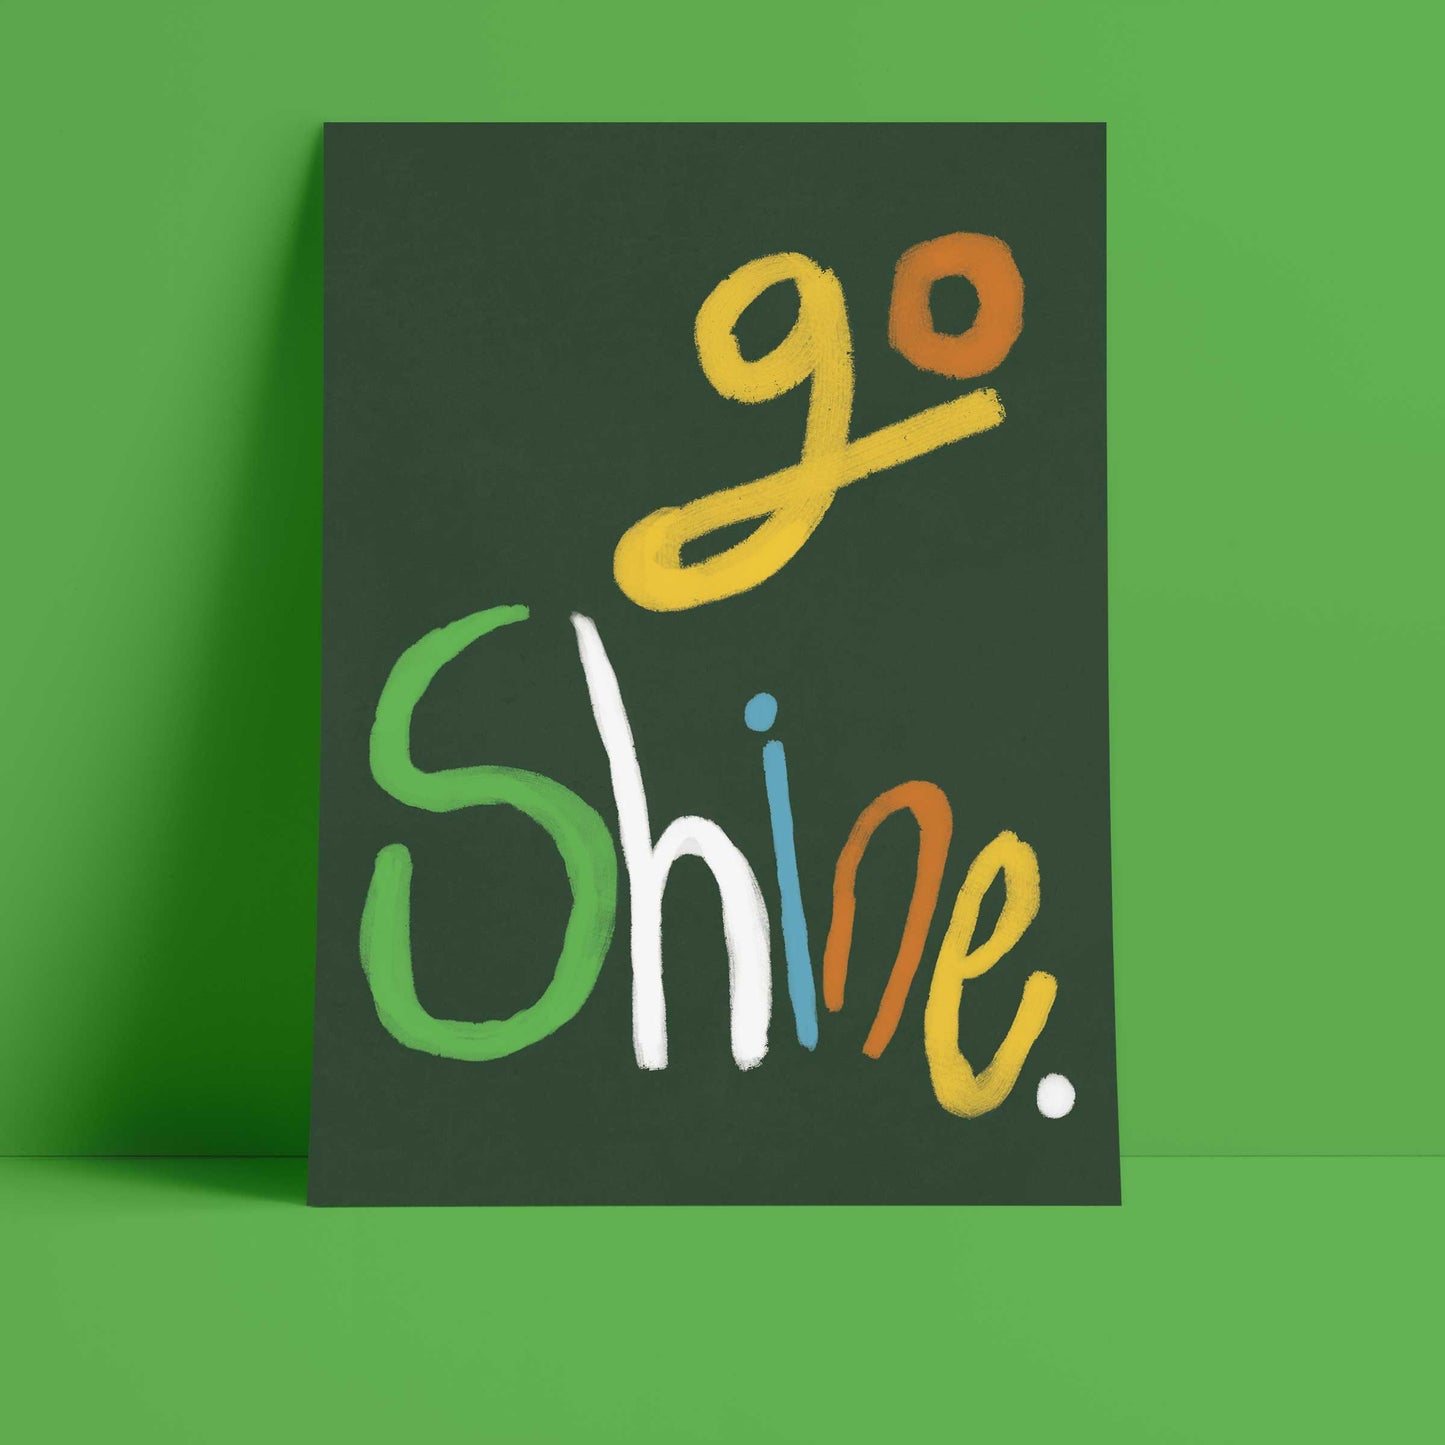 Go Shine Art Print - Green, Multi-coloured Fine Art Print